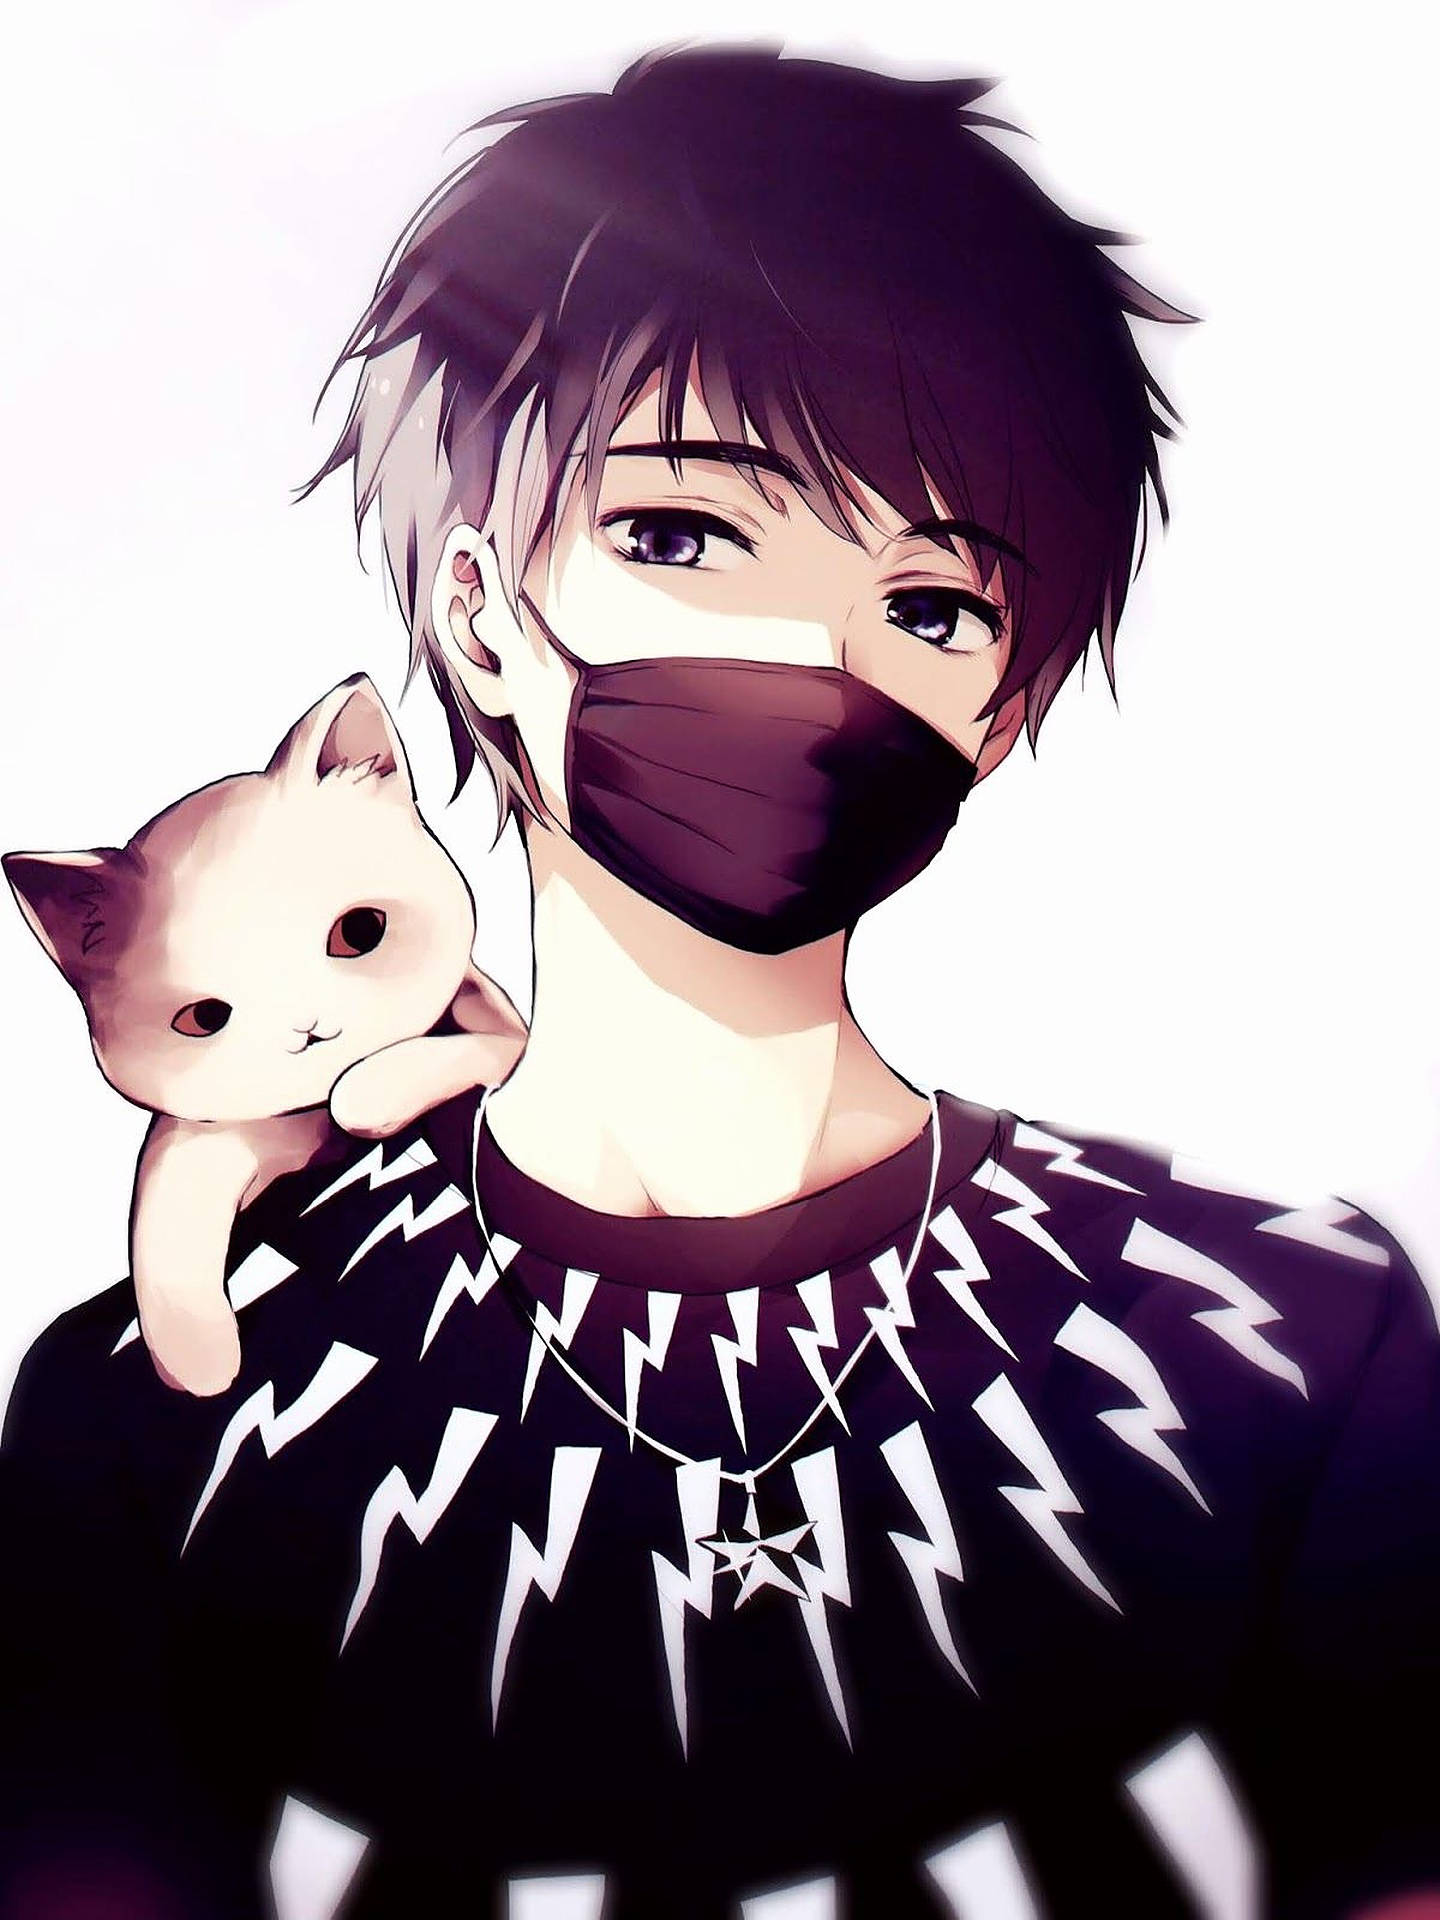 Cute Anime Boy Profile Picture Wallpaper